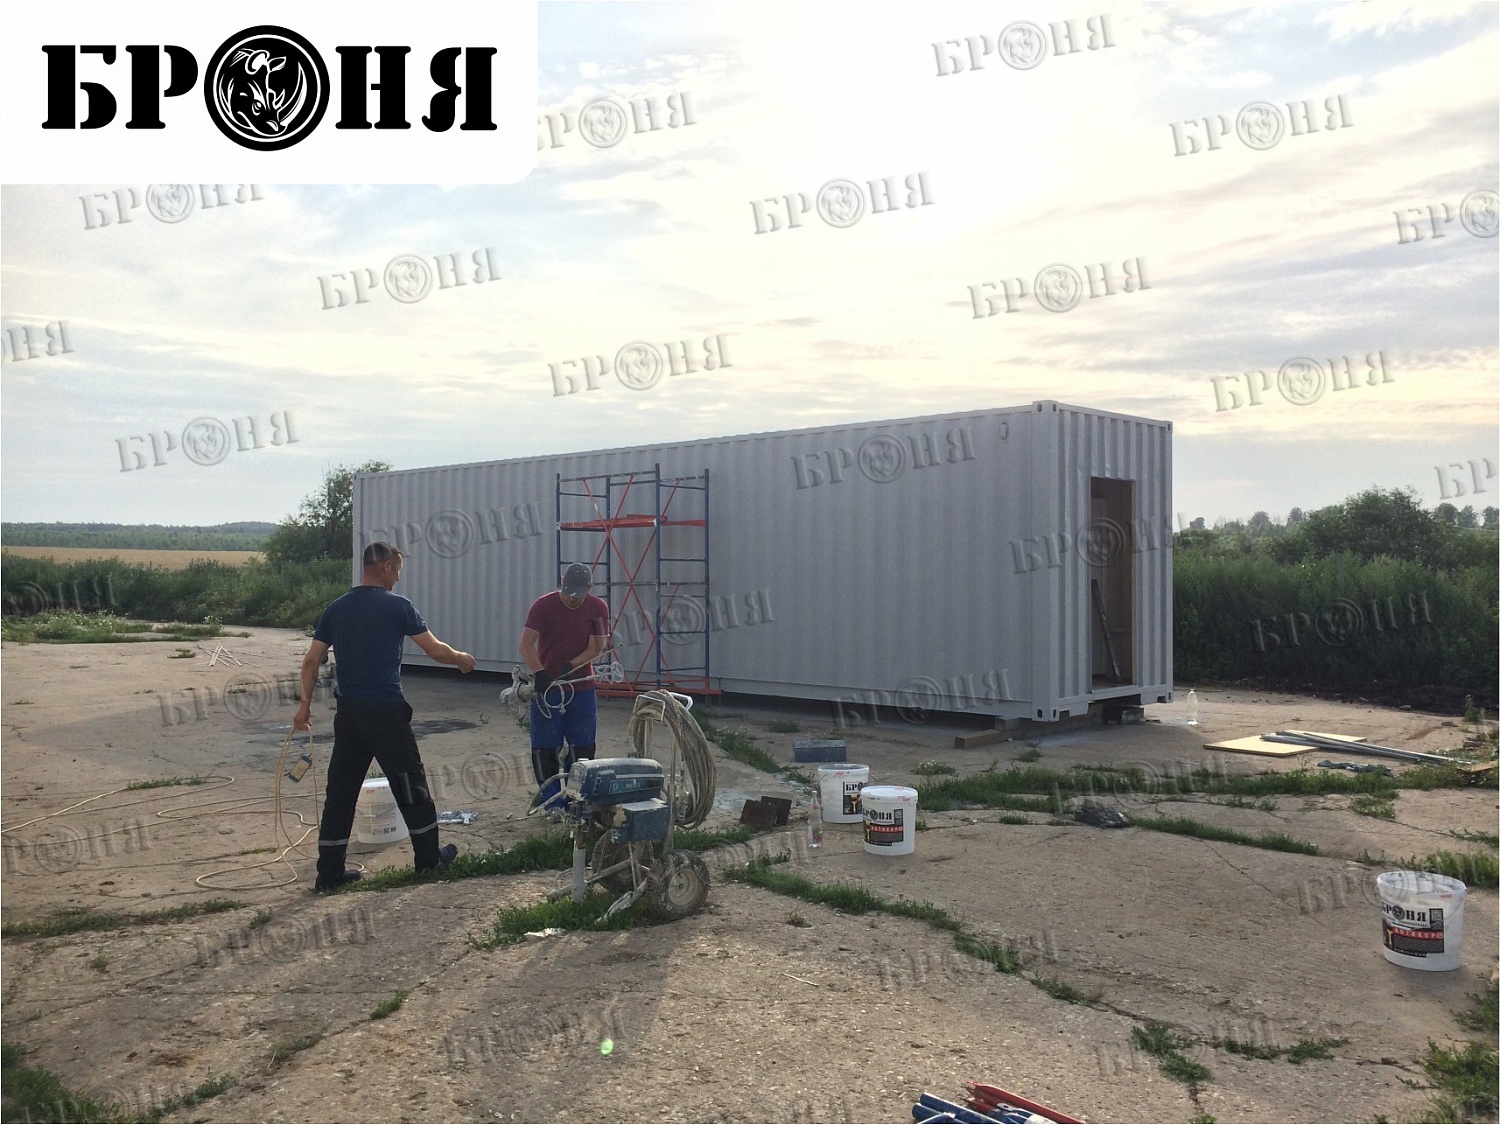 Шепилово Московской области, Броня при утеплении 40-футовых контейнеров для перепелиной птицефабрики